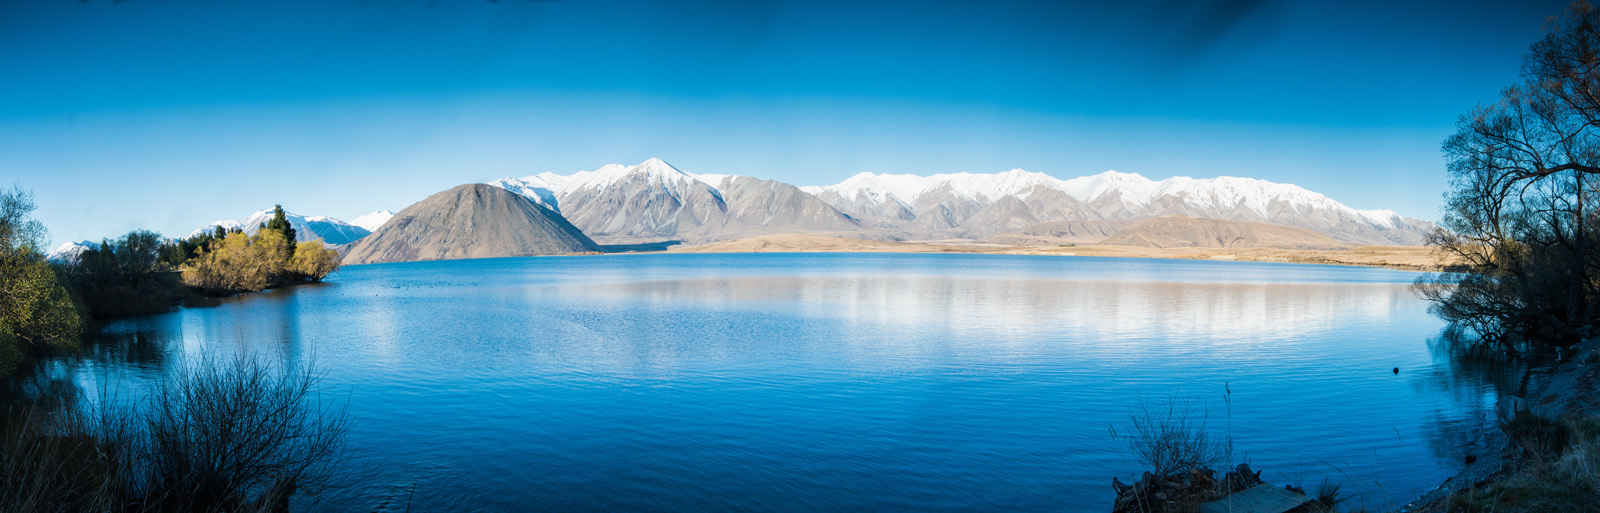 新西兰白鹭湖壁纸图片-